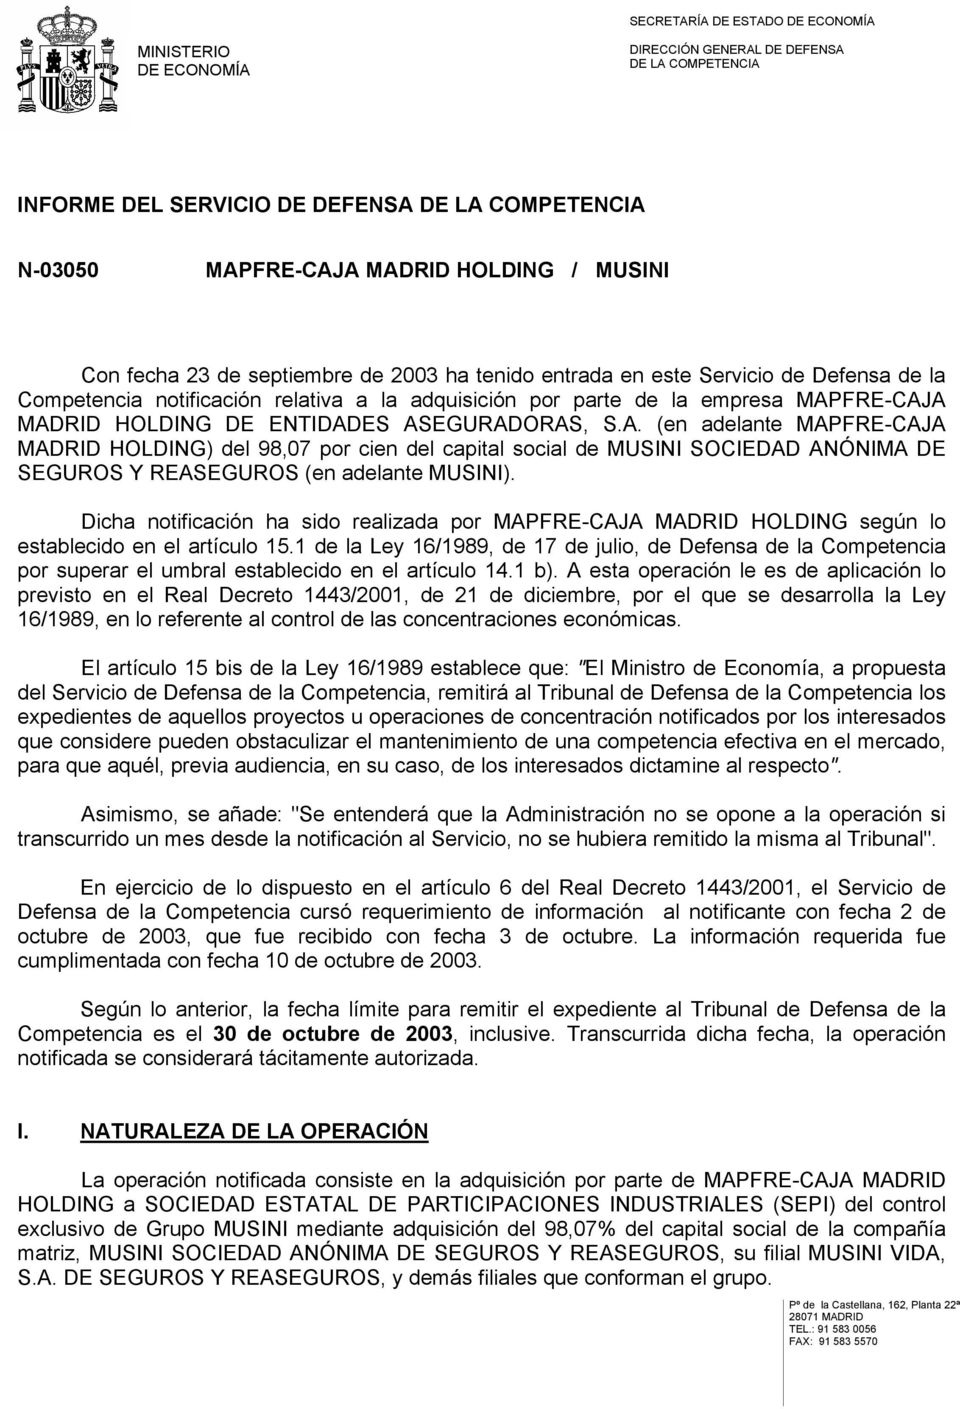 FRE-CAJA MADRID HOLDING DE ENTIDADES ASEGURADORAS, S.A. (en adelante MAPFRE-CAJA MADRID HOLDING) del 98,07 por cien del capital social de MUSINI SOCIEDAD ANÓNIMA DE SEGUROS Y REASEGUROS (en adelante MUSINI).